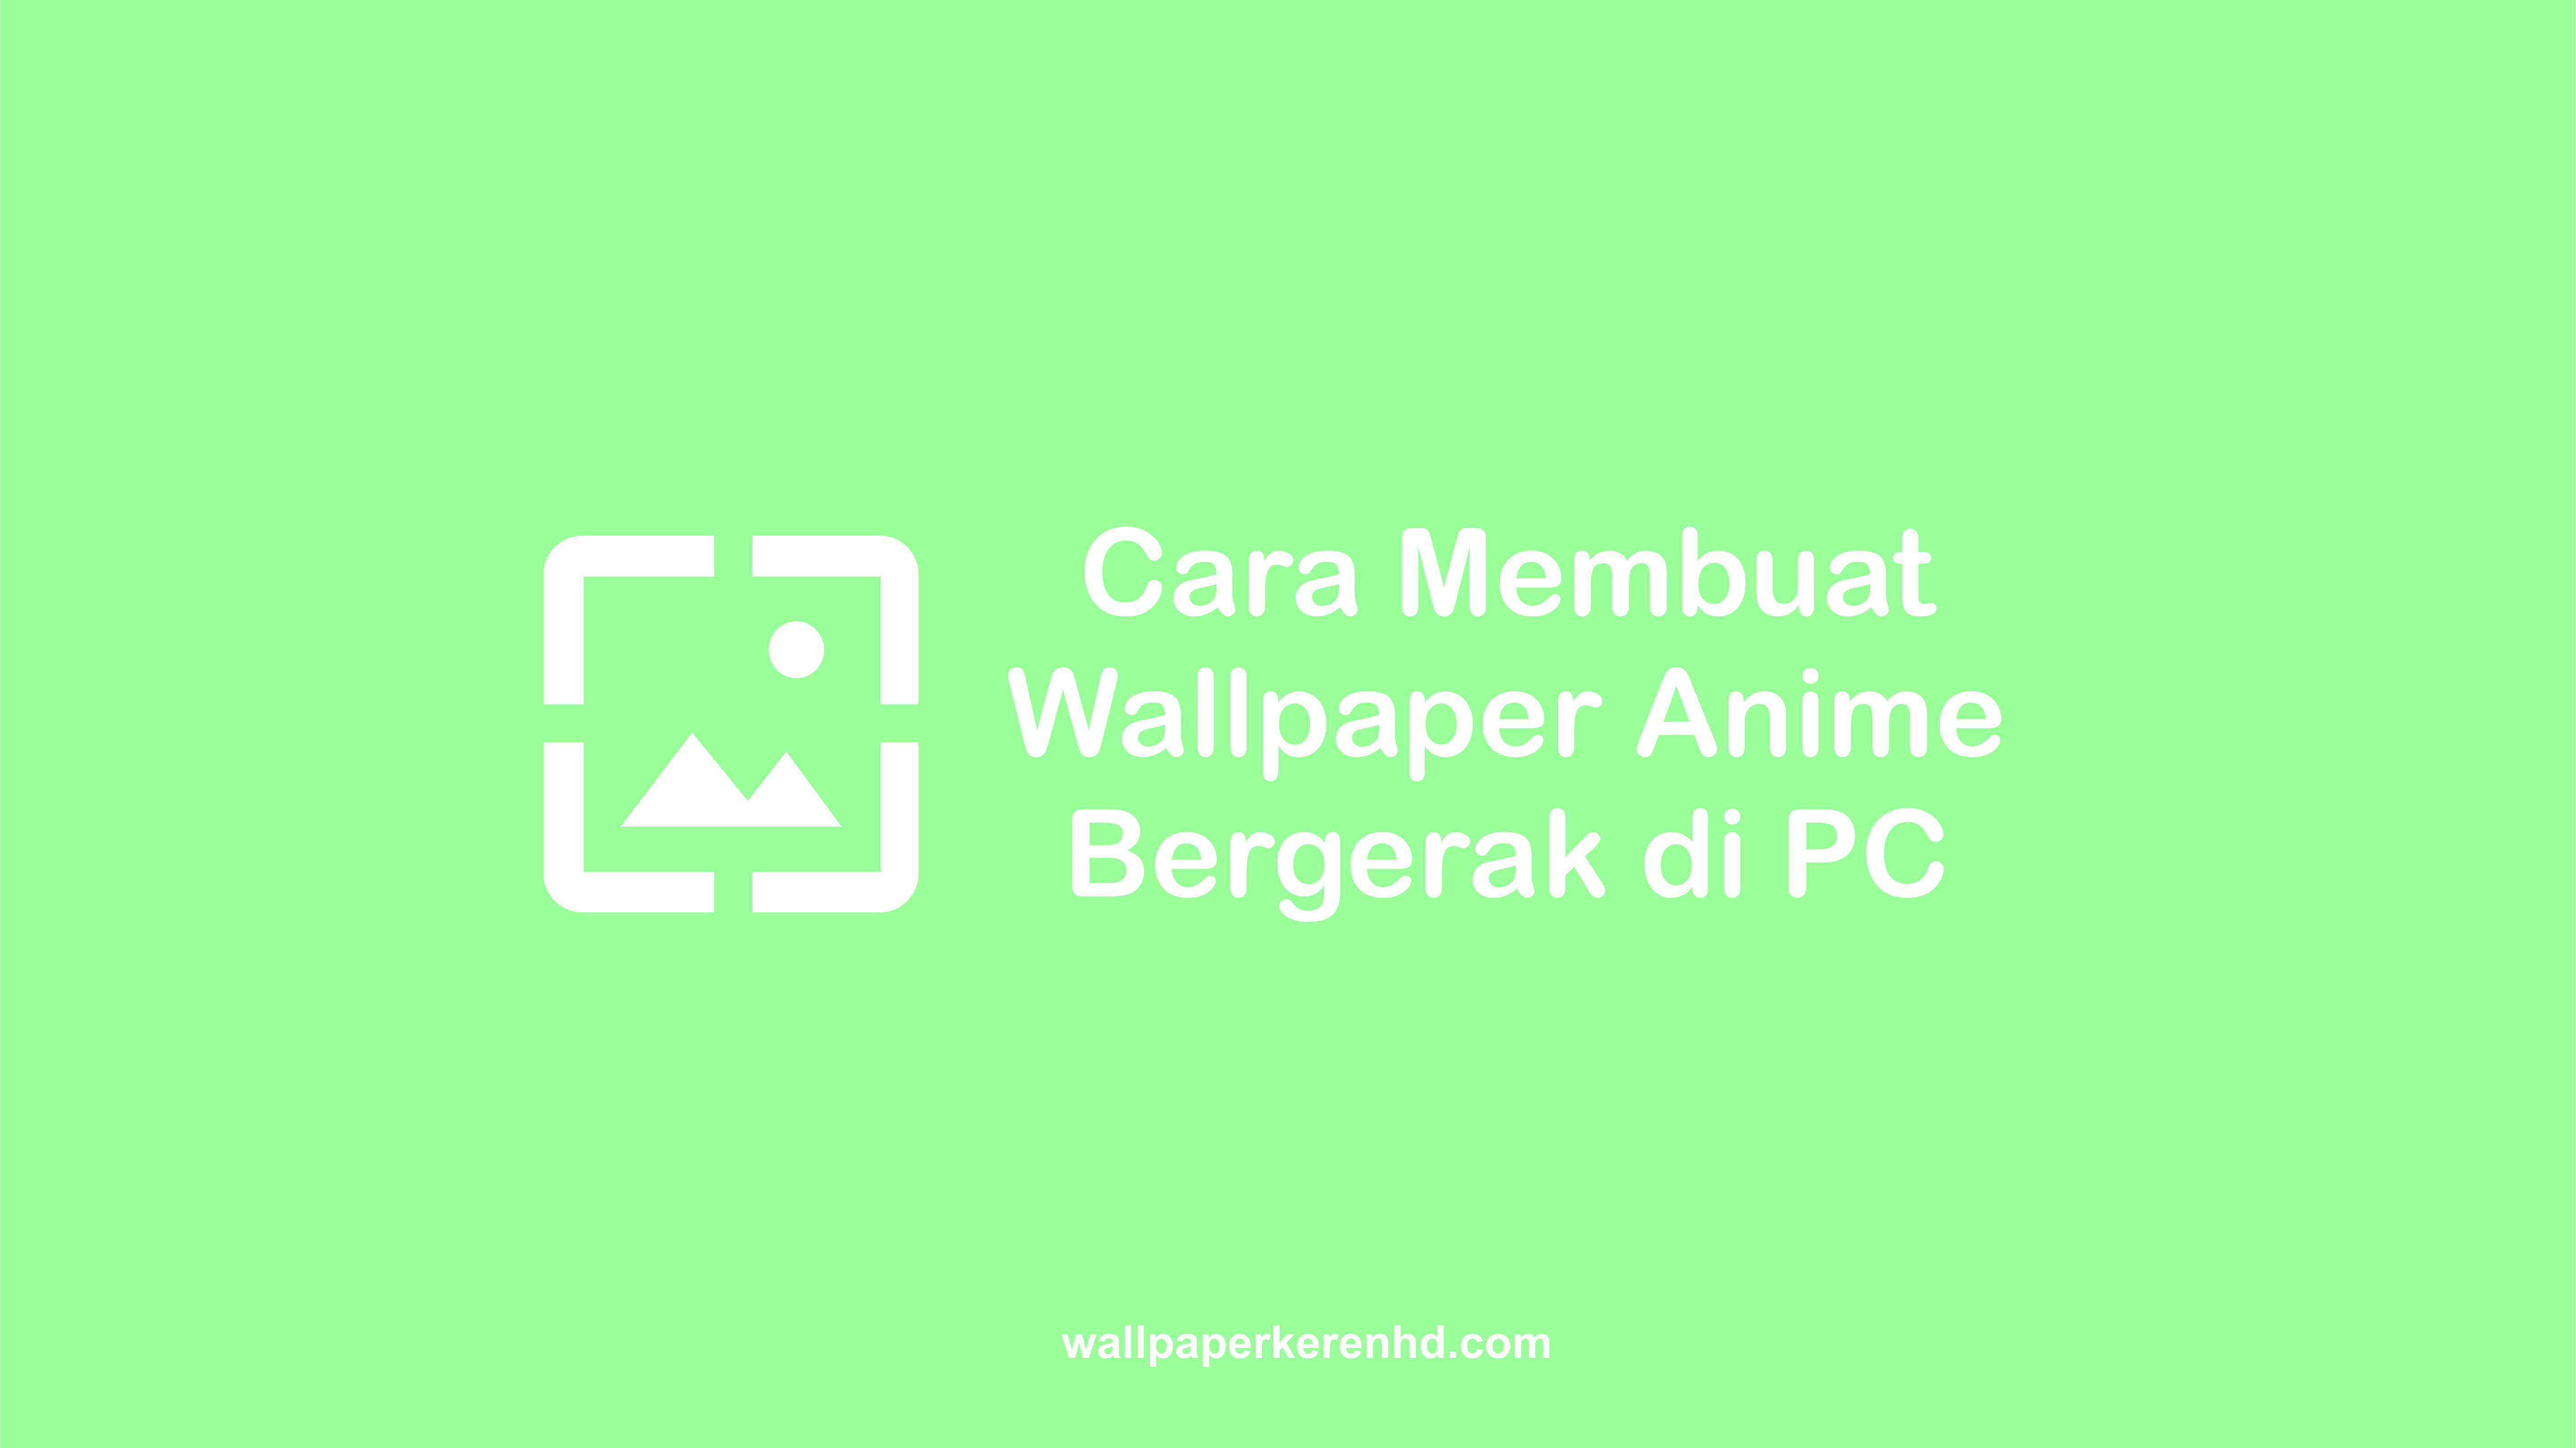 Cara Membuat Wallpaper Anime Bergerak Di Pc 1380